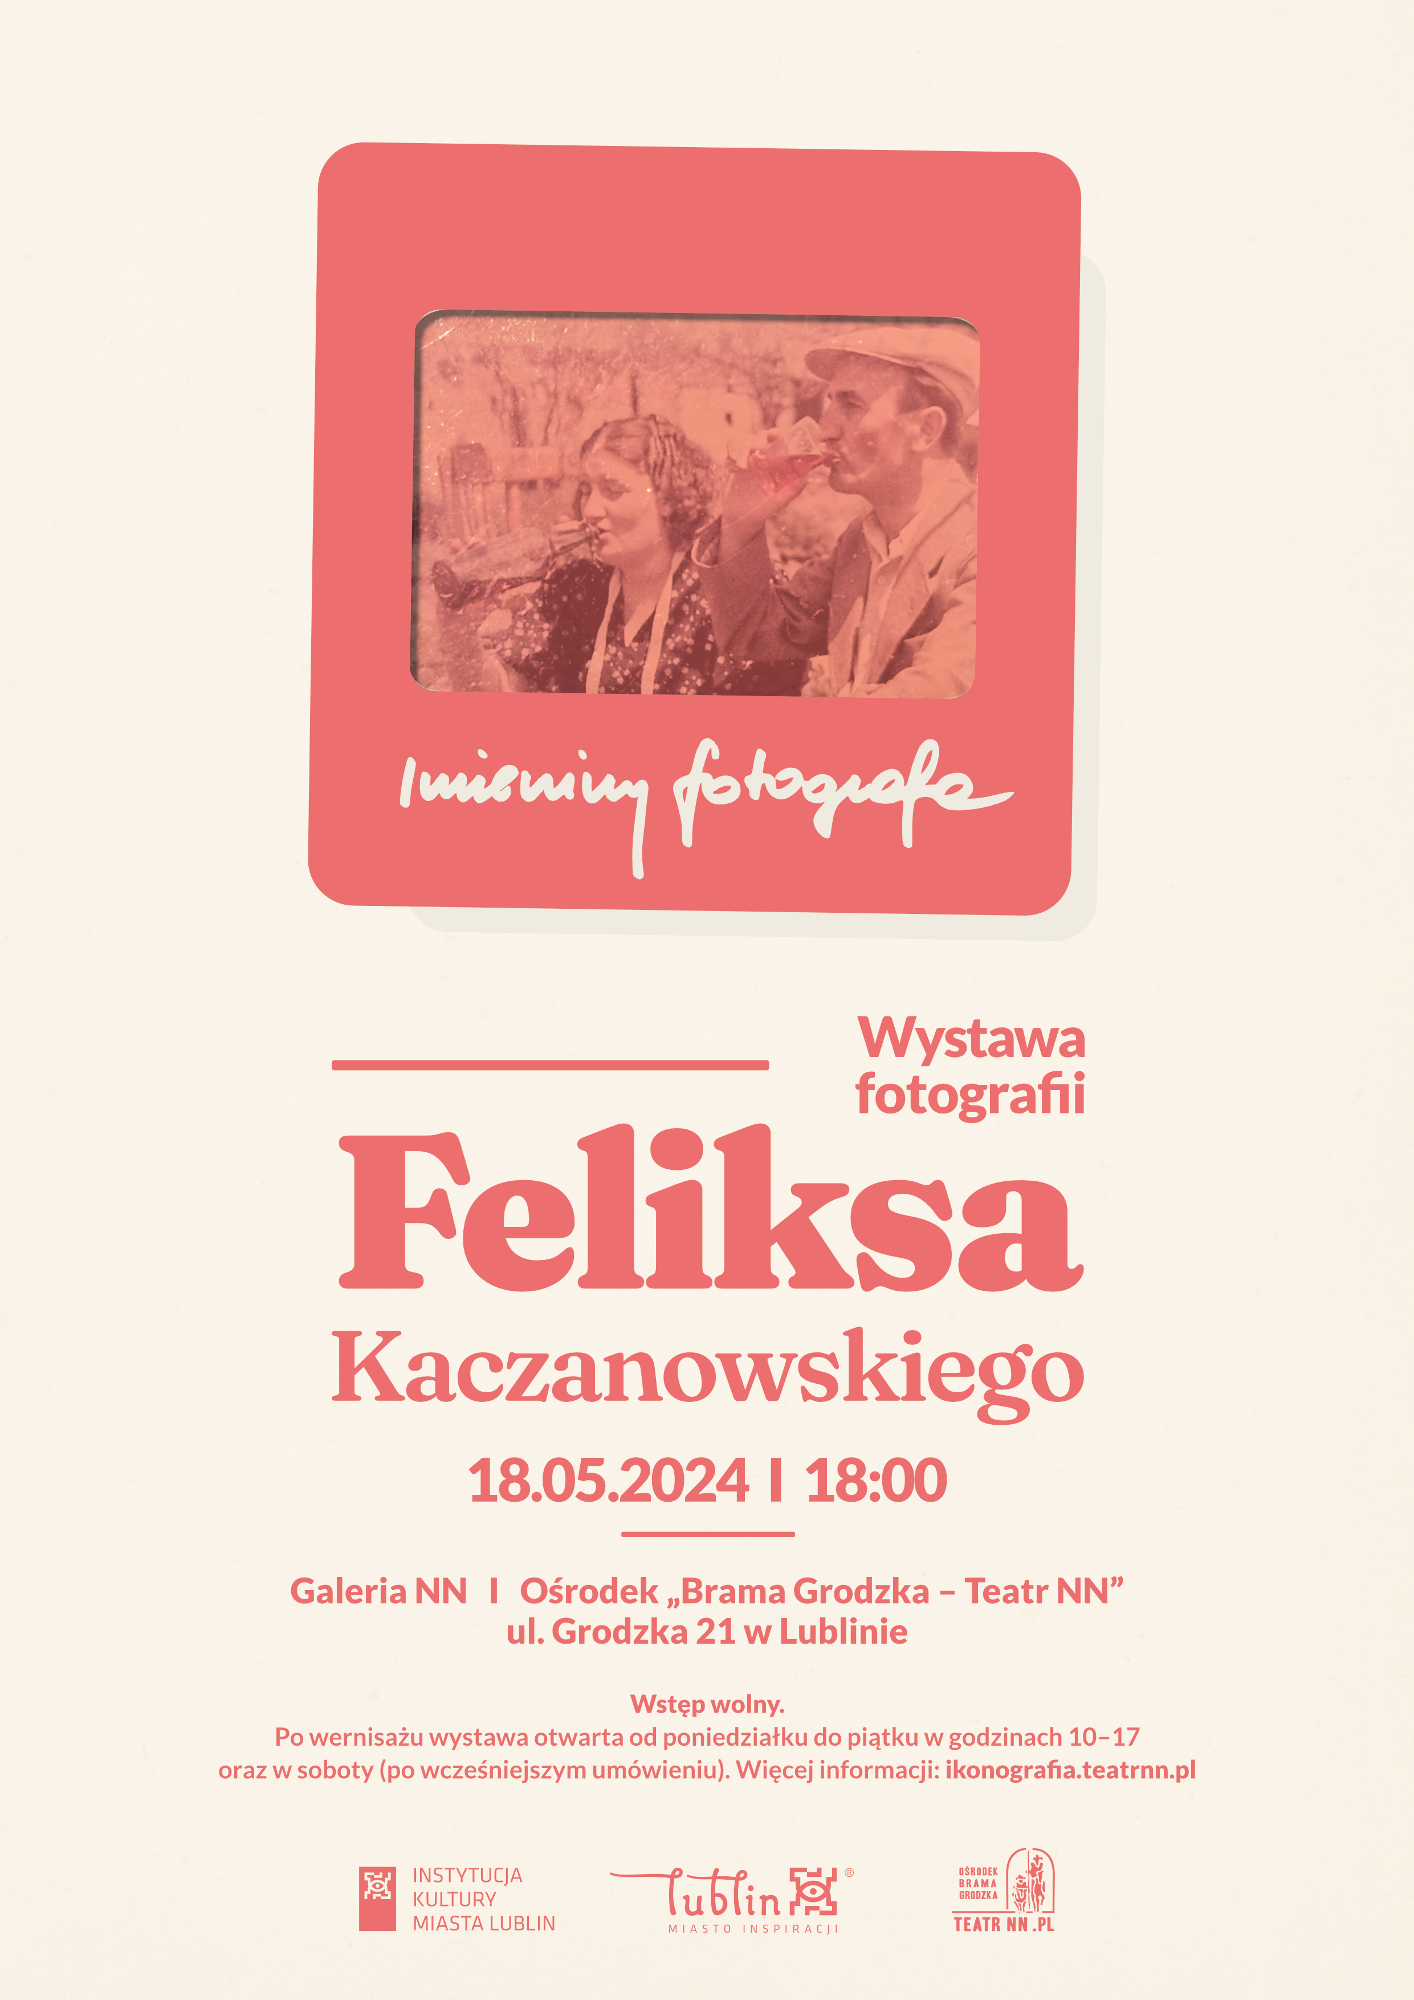 Imieniny Fotografa – wystawa fotografii Feliksa Kaczanowskiego